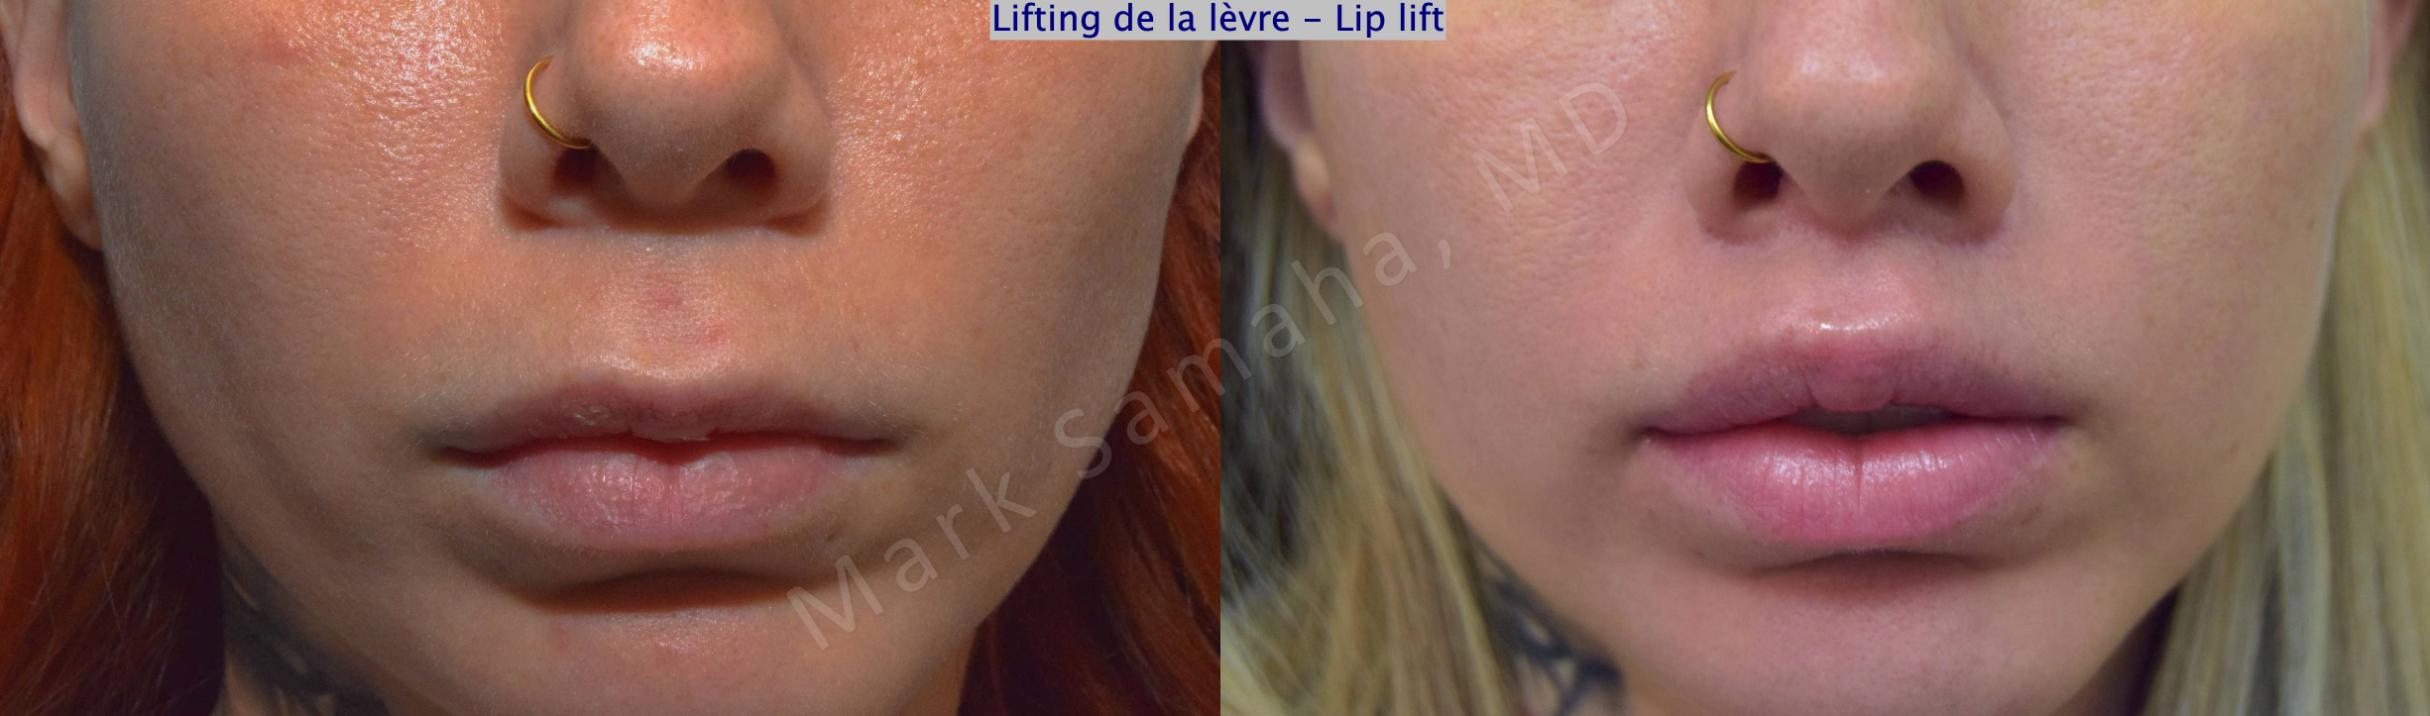 Before & After Lip Lift / Lifting de la lèvre supérieure Case 176 Front View in Mount Royal, QC